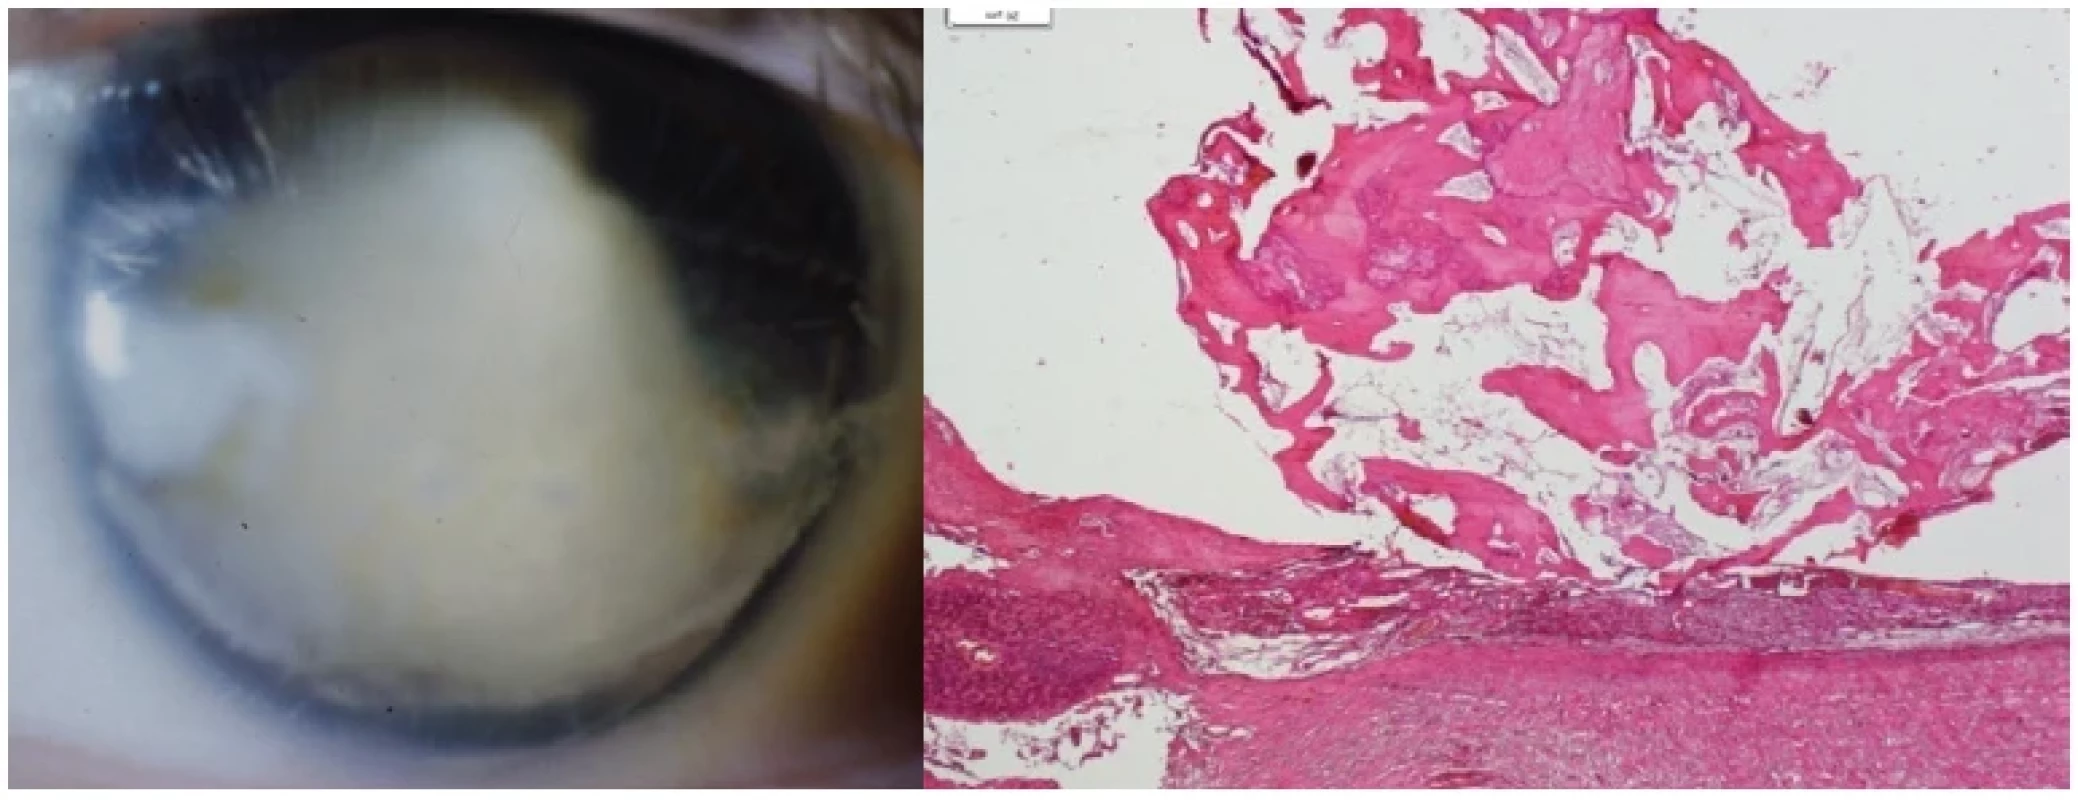 Vlevo: Ftíza bulbu po toxokarovém zánětu
Vpravo: Osifikovaná cysta po hlístu v cévnatce, HE, zvětšení 20x